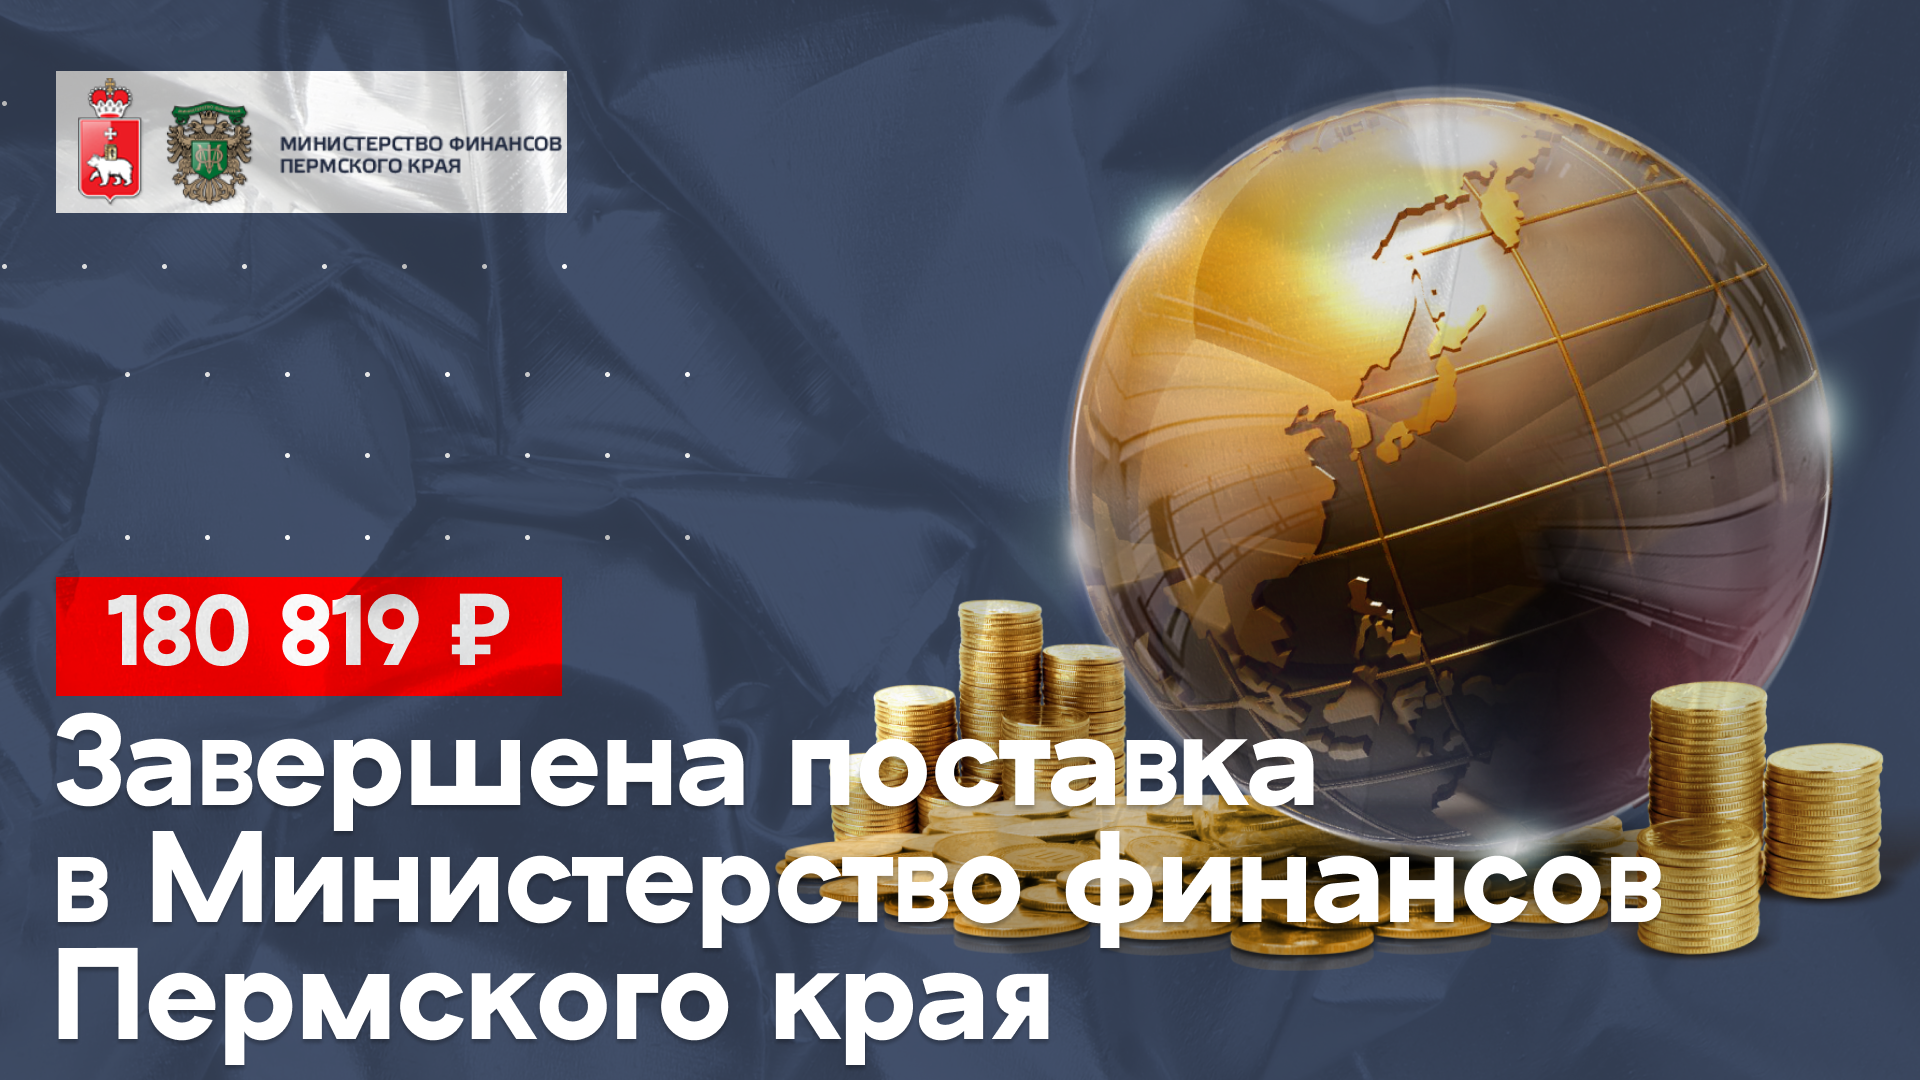 Осуществили поставку в Министерство финансов Пермского края на 180 819 руб.